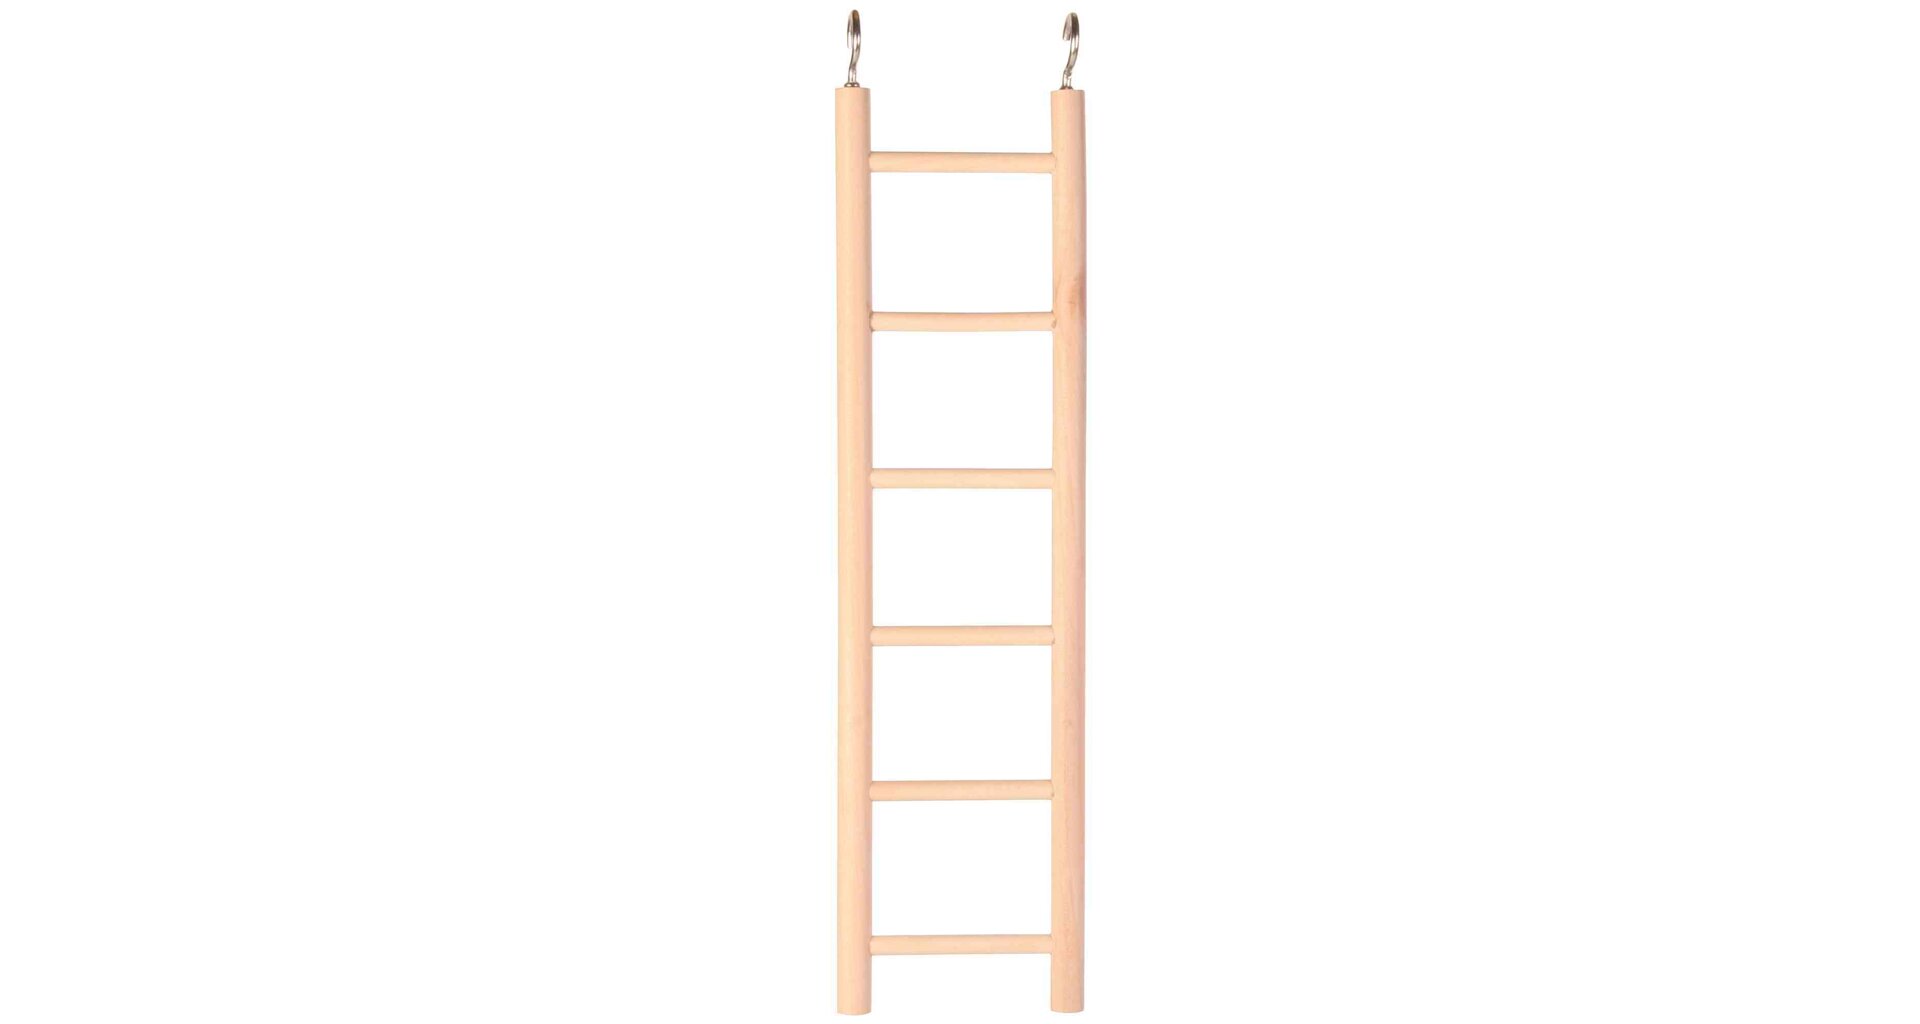 HRAČKA Drevený závesný rebrík - 4 priečky 20cm